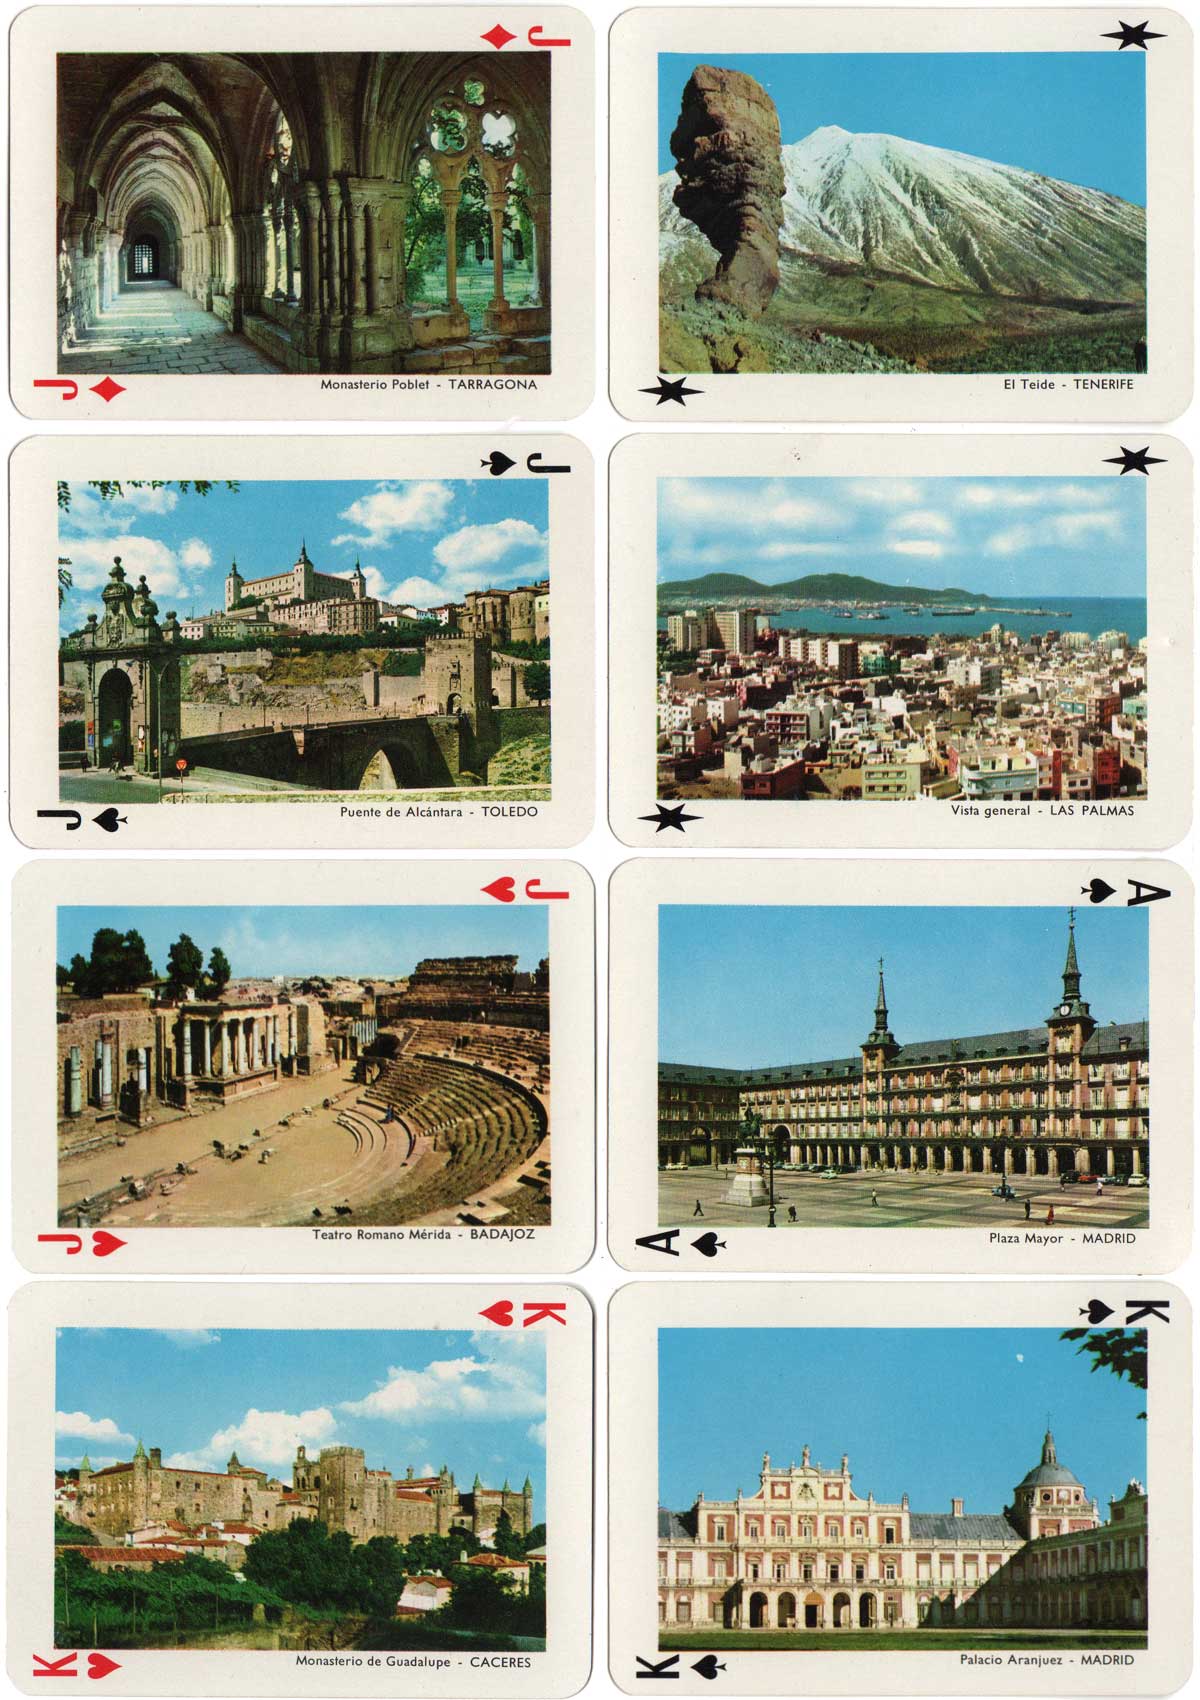 Baraja Turística de España published by Heraclio Fournier, 1966